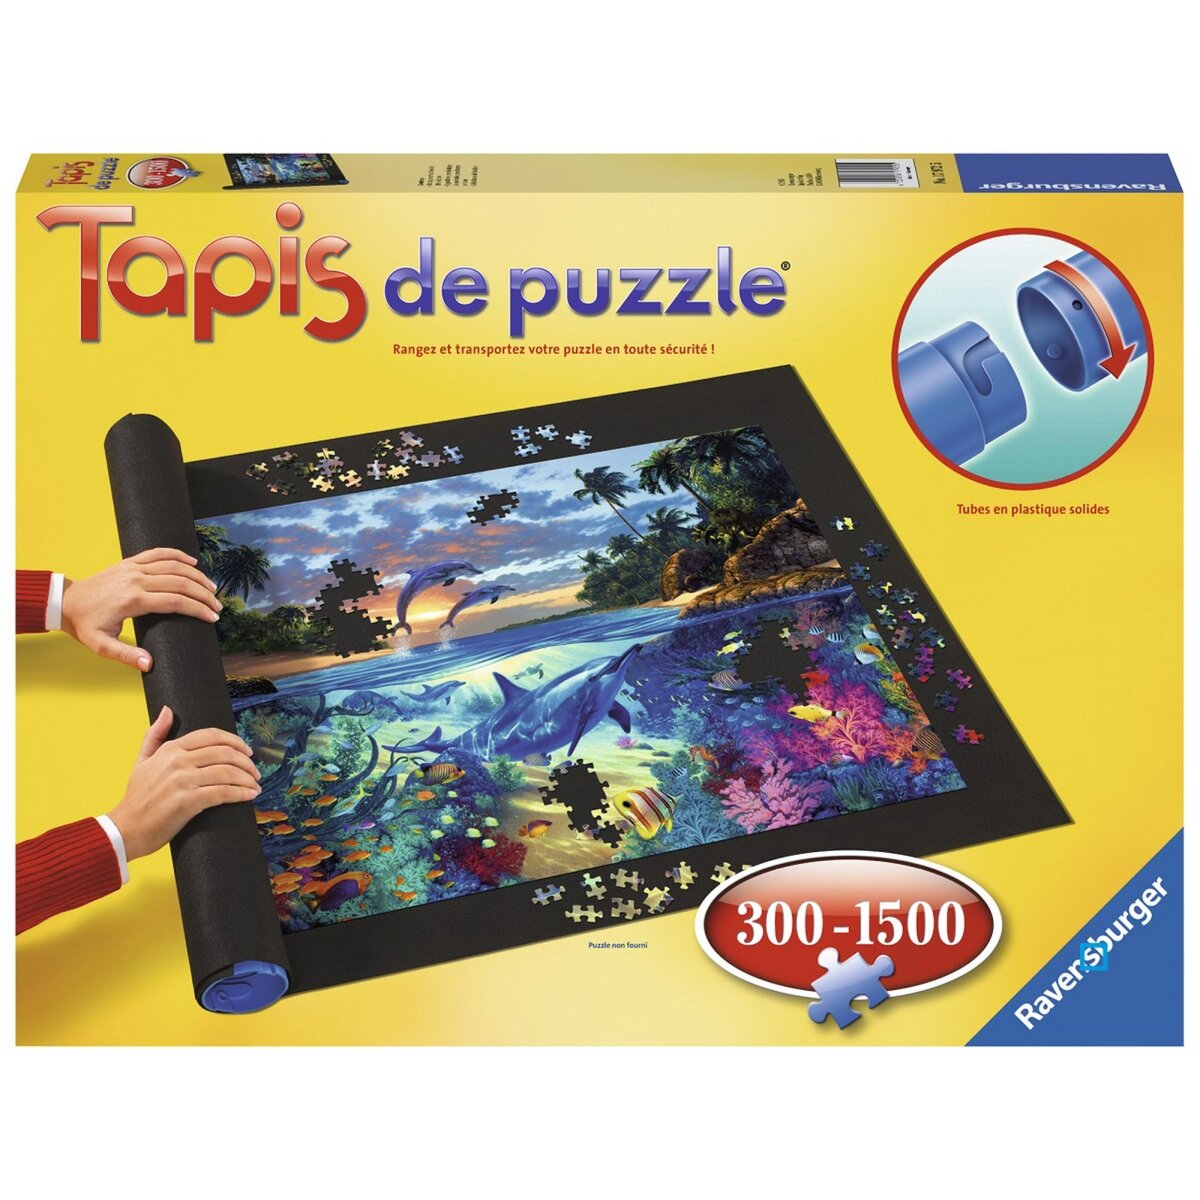 Tapis Puzzle 3000 pièces - Tapis pour Puzzle Enroulable XXL pour